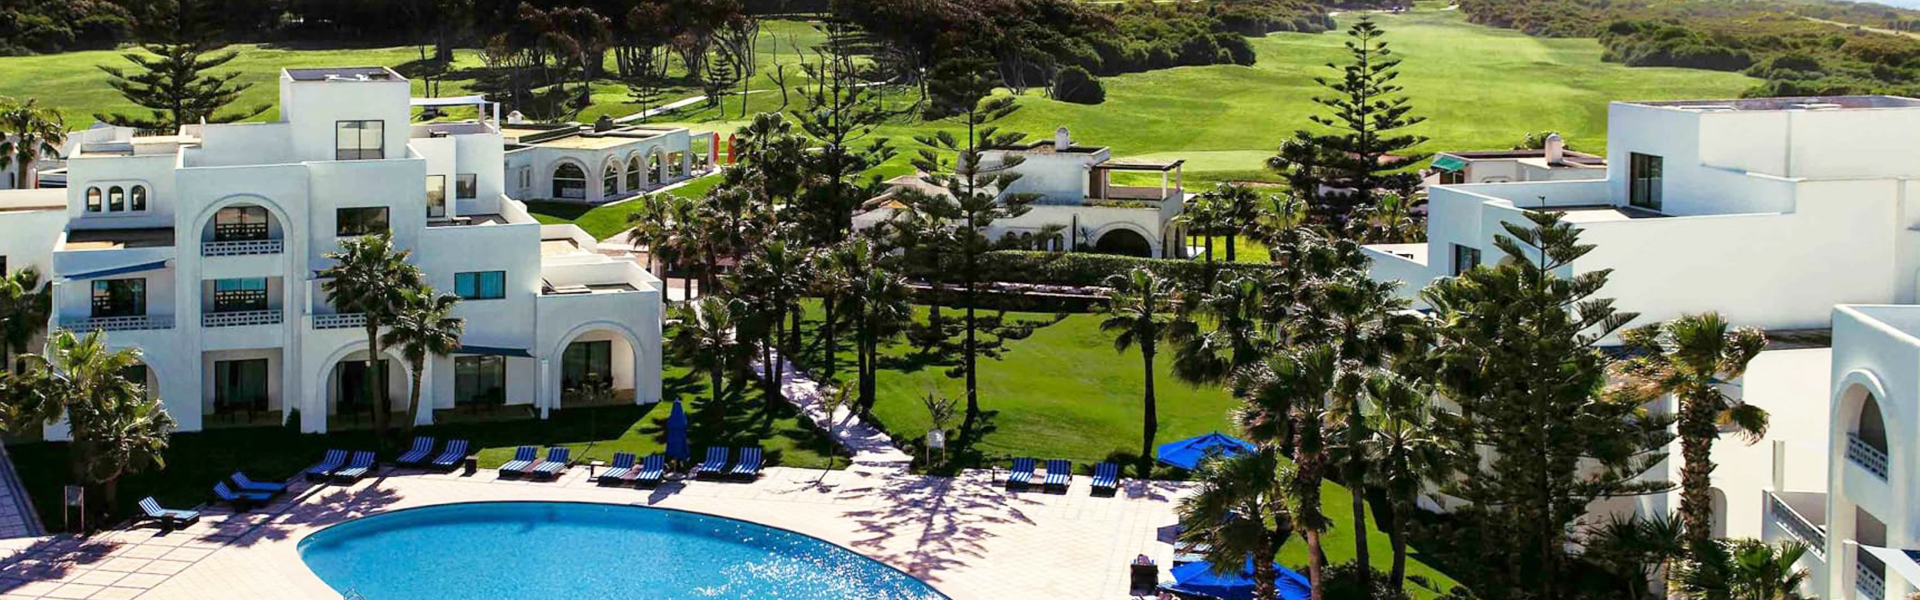 Bilyana Golf-Hotel Pullman Mazagan Royal Golf & Spa